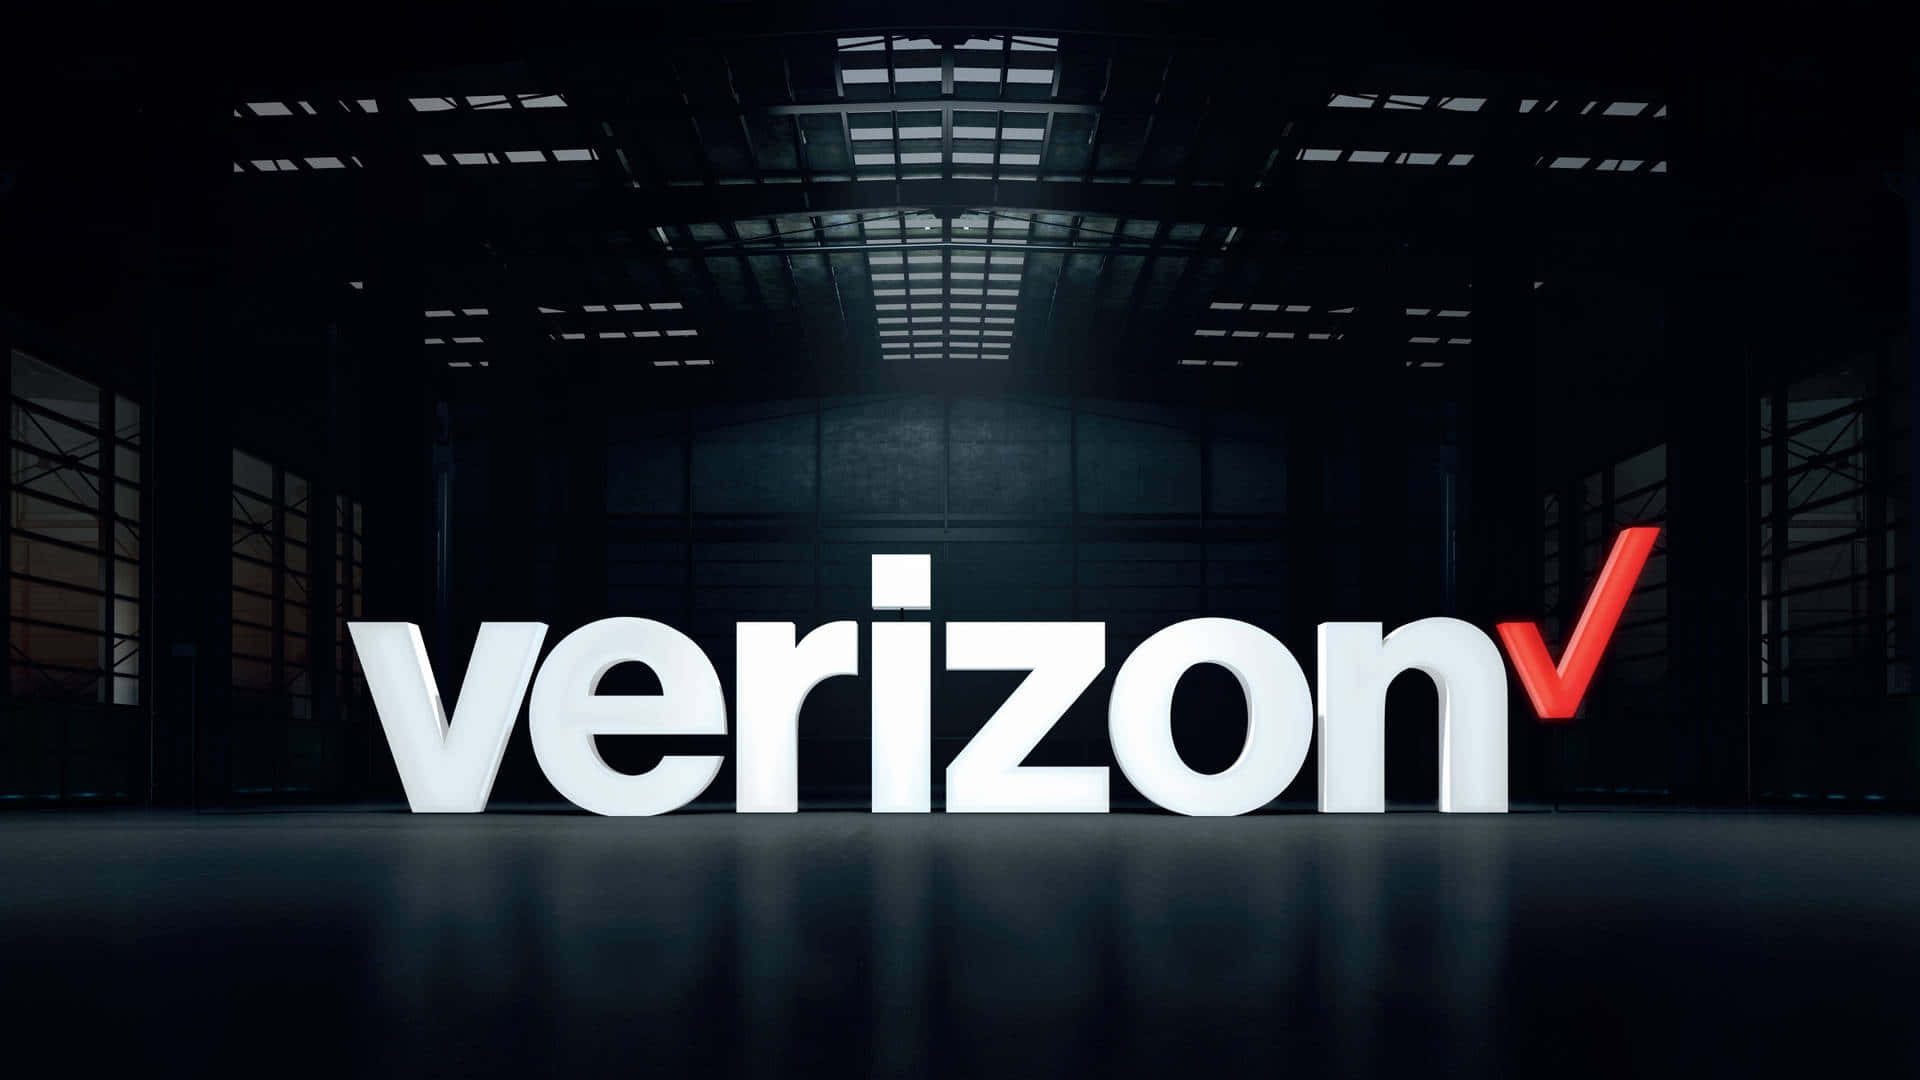 Verizon V Logo In A Dark Warehouse